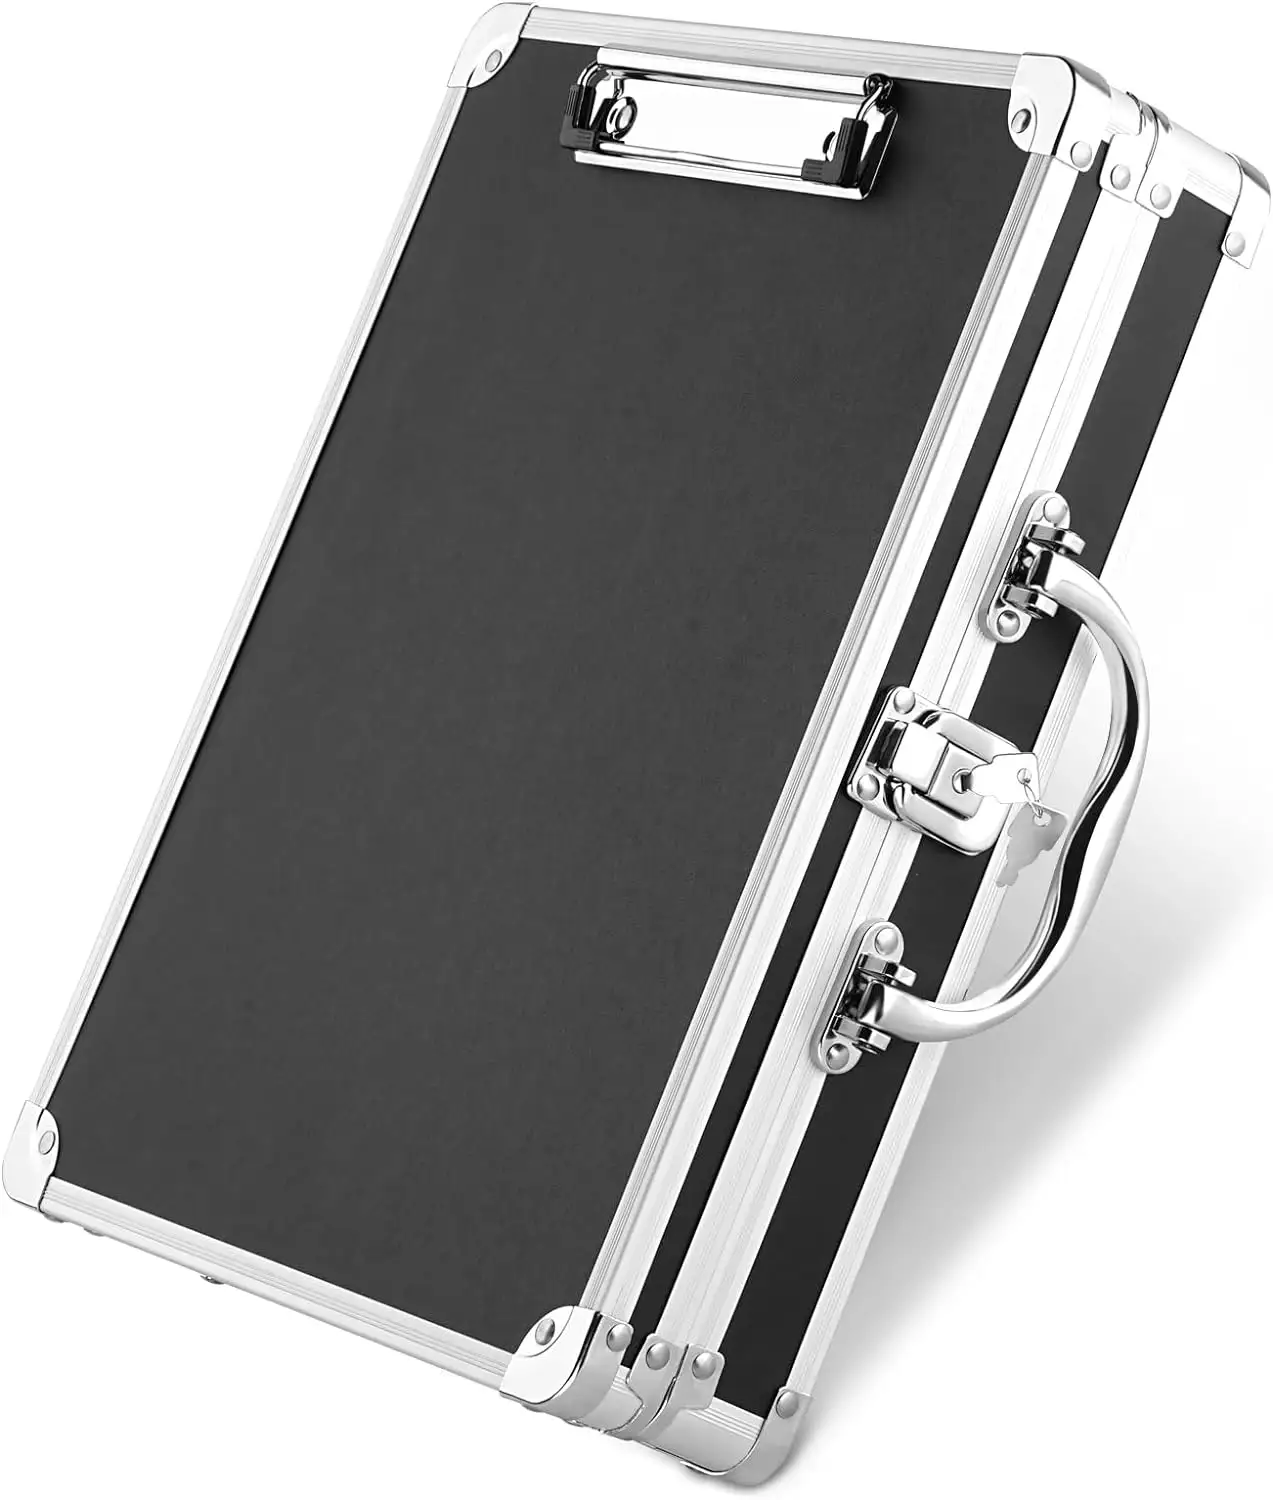 صندوق تخزين لوحة مفاتيح مخصصة حجم A4، لوحة تخزين متينة، حقيبة معدنية بقفل من الألومنيوم مع مقبض